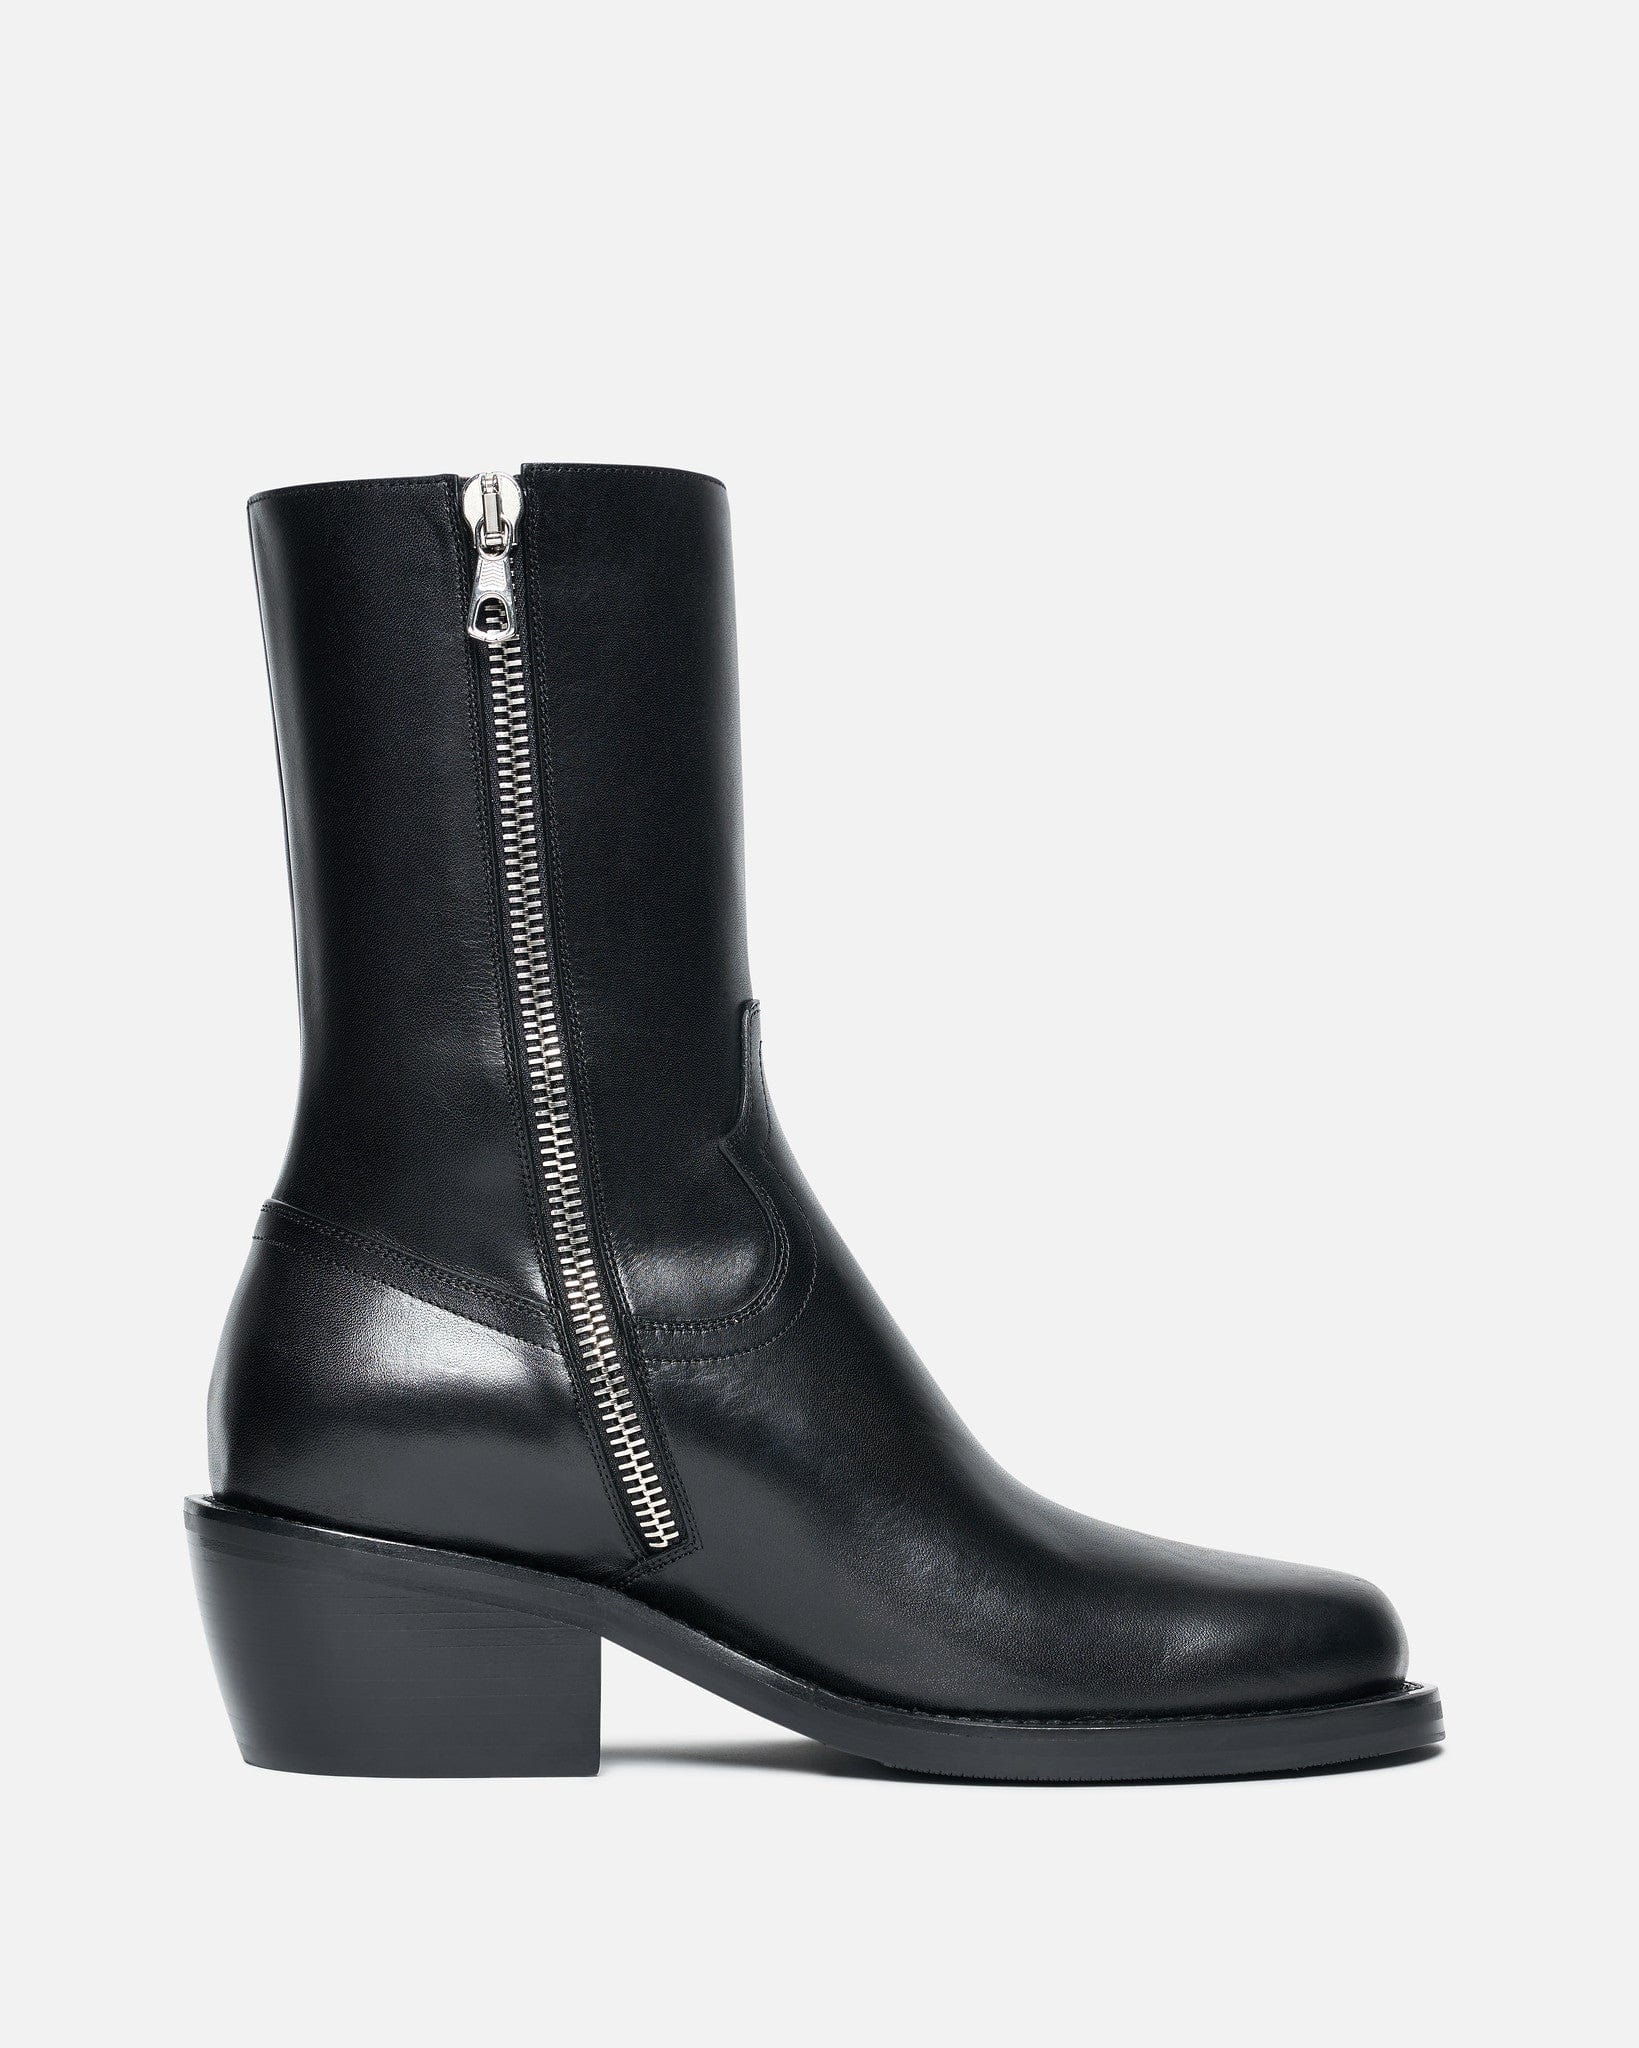 Dries Van Noten Men's Boots Square Toe Boots in Black